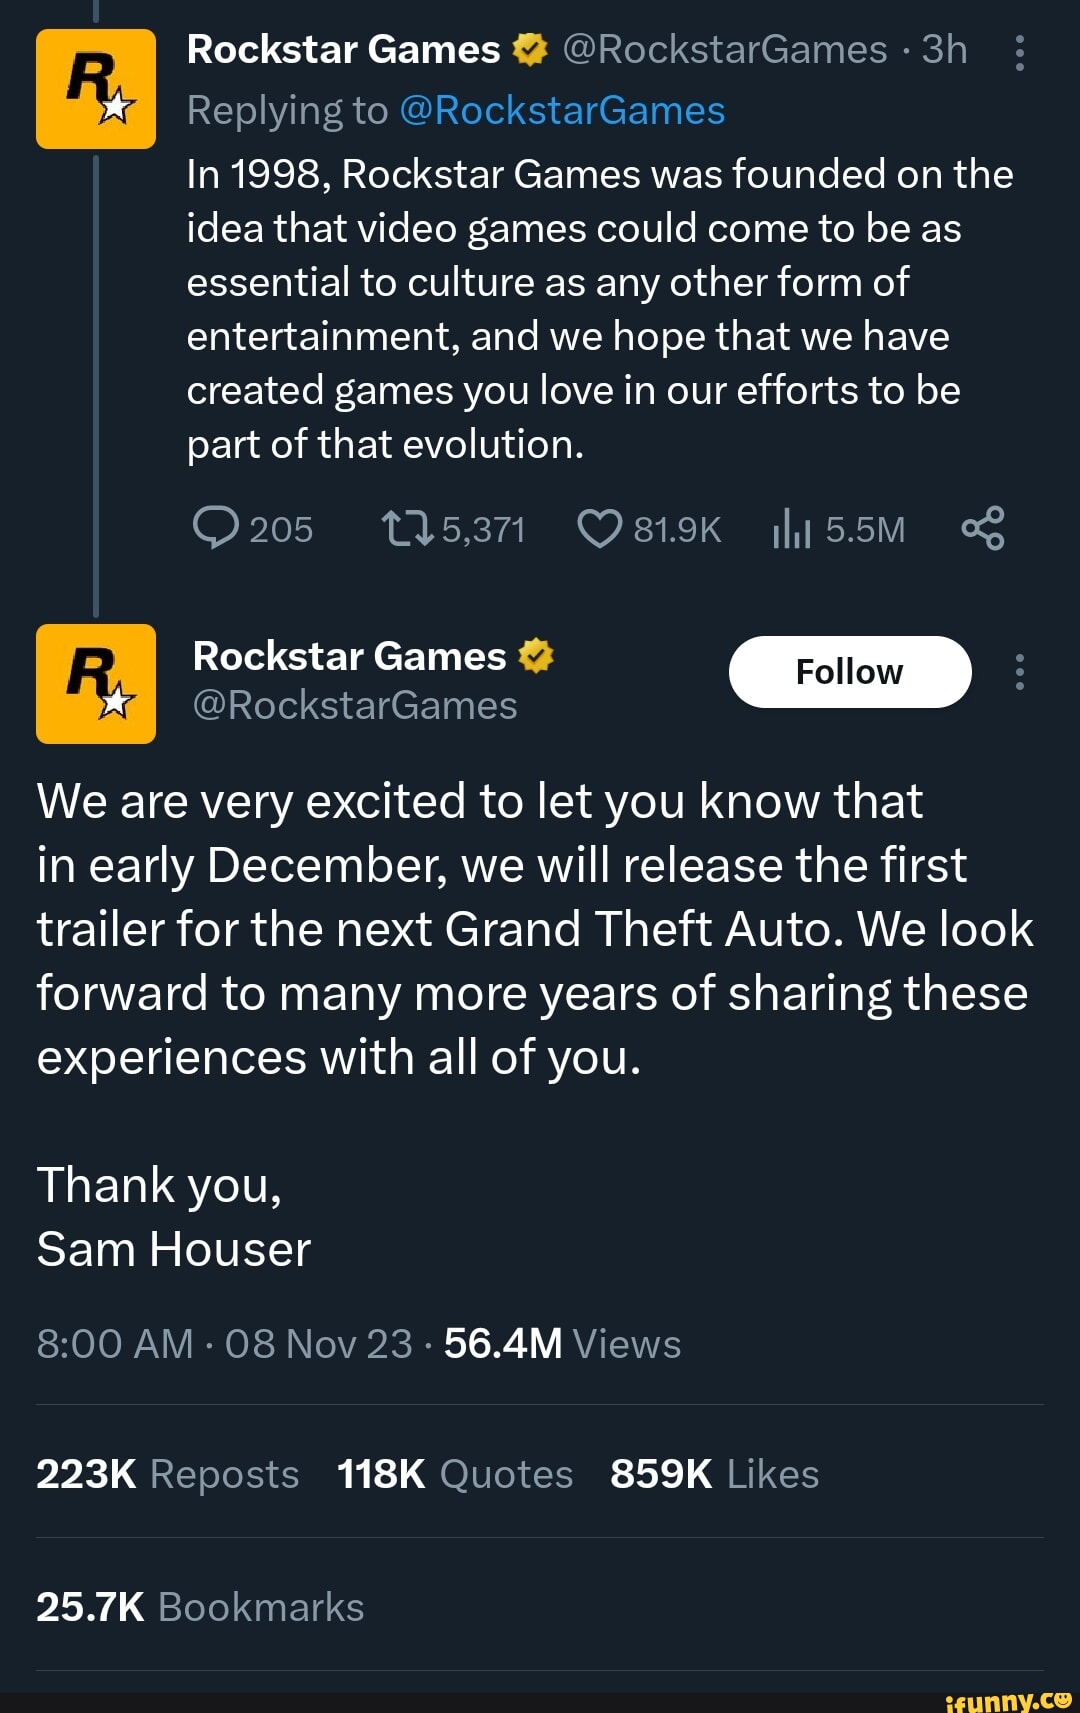 Rockstar Games Culture